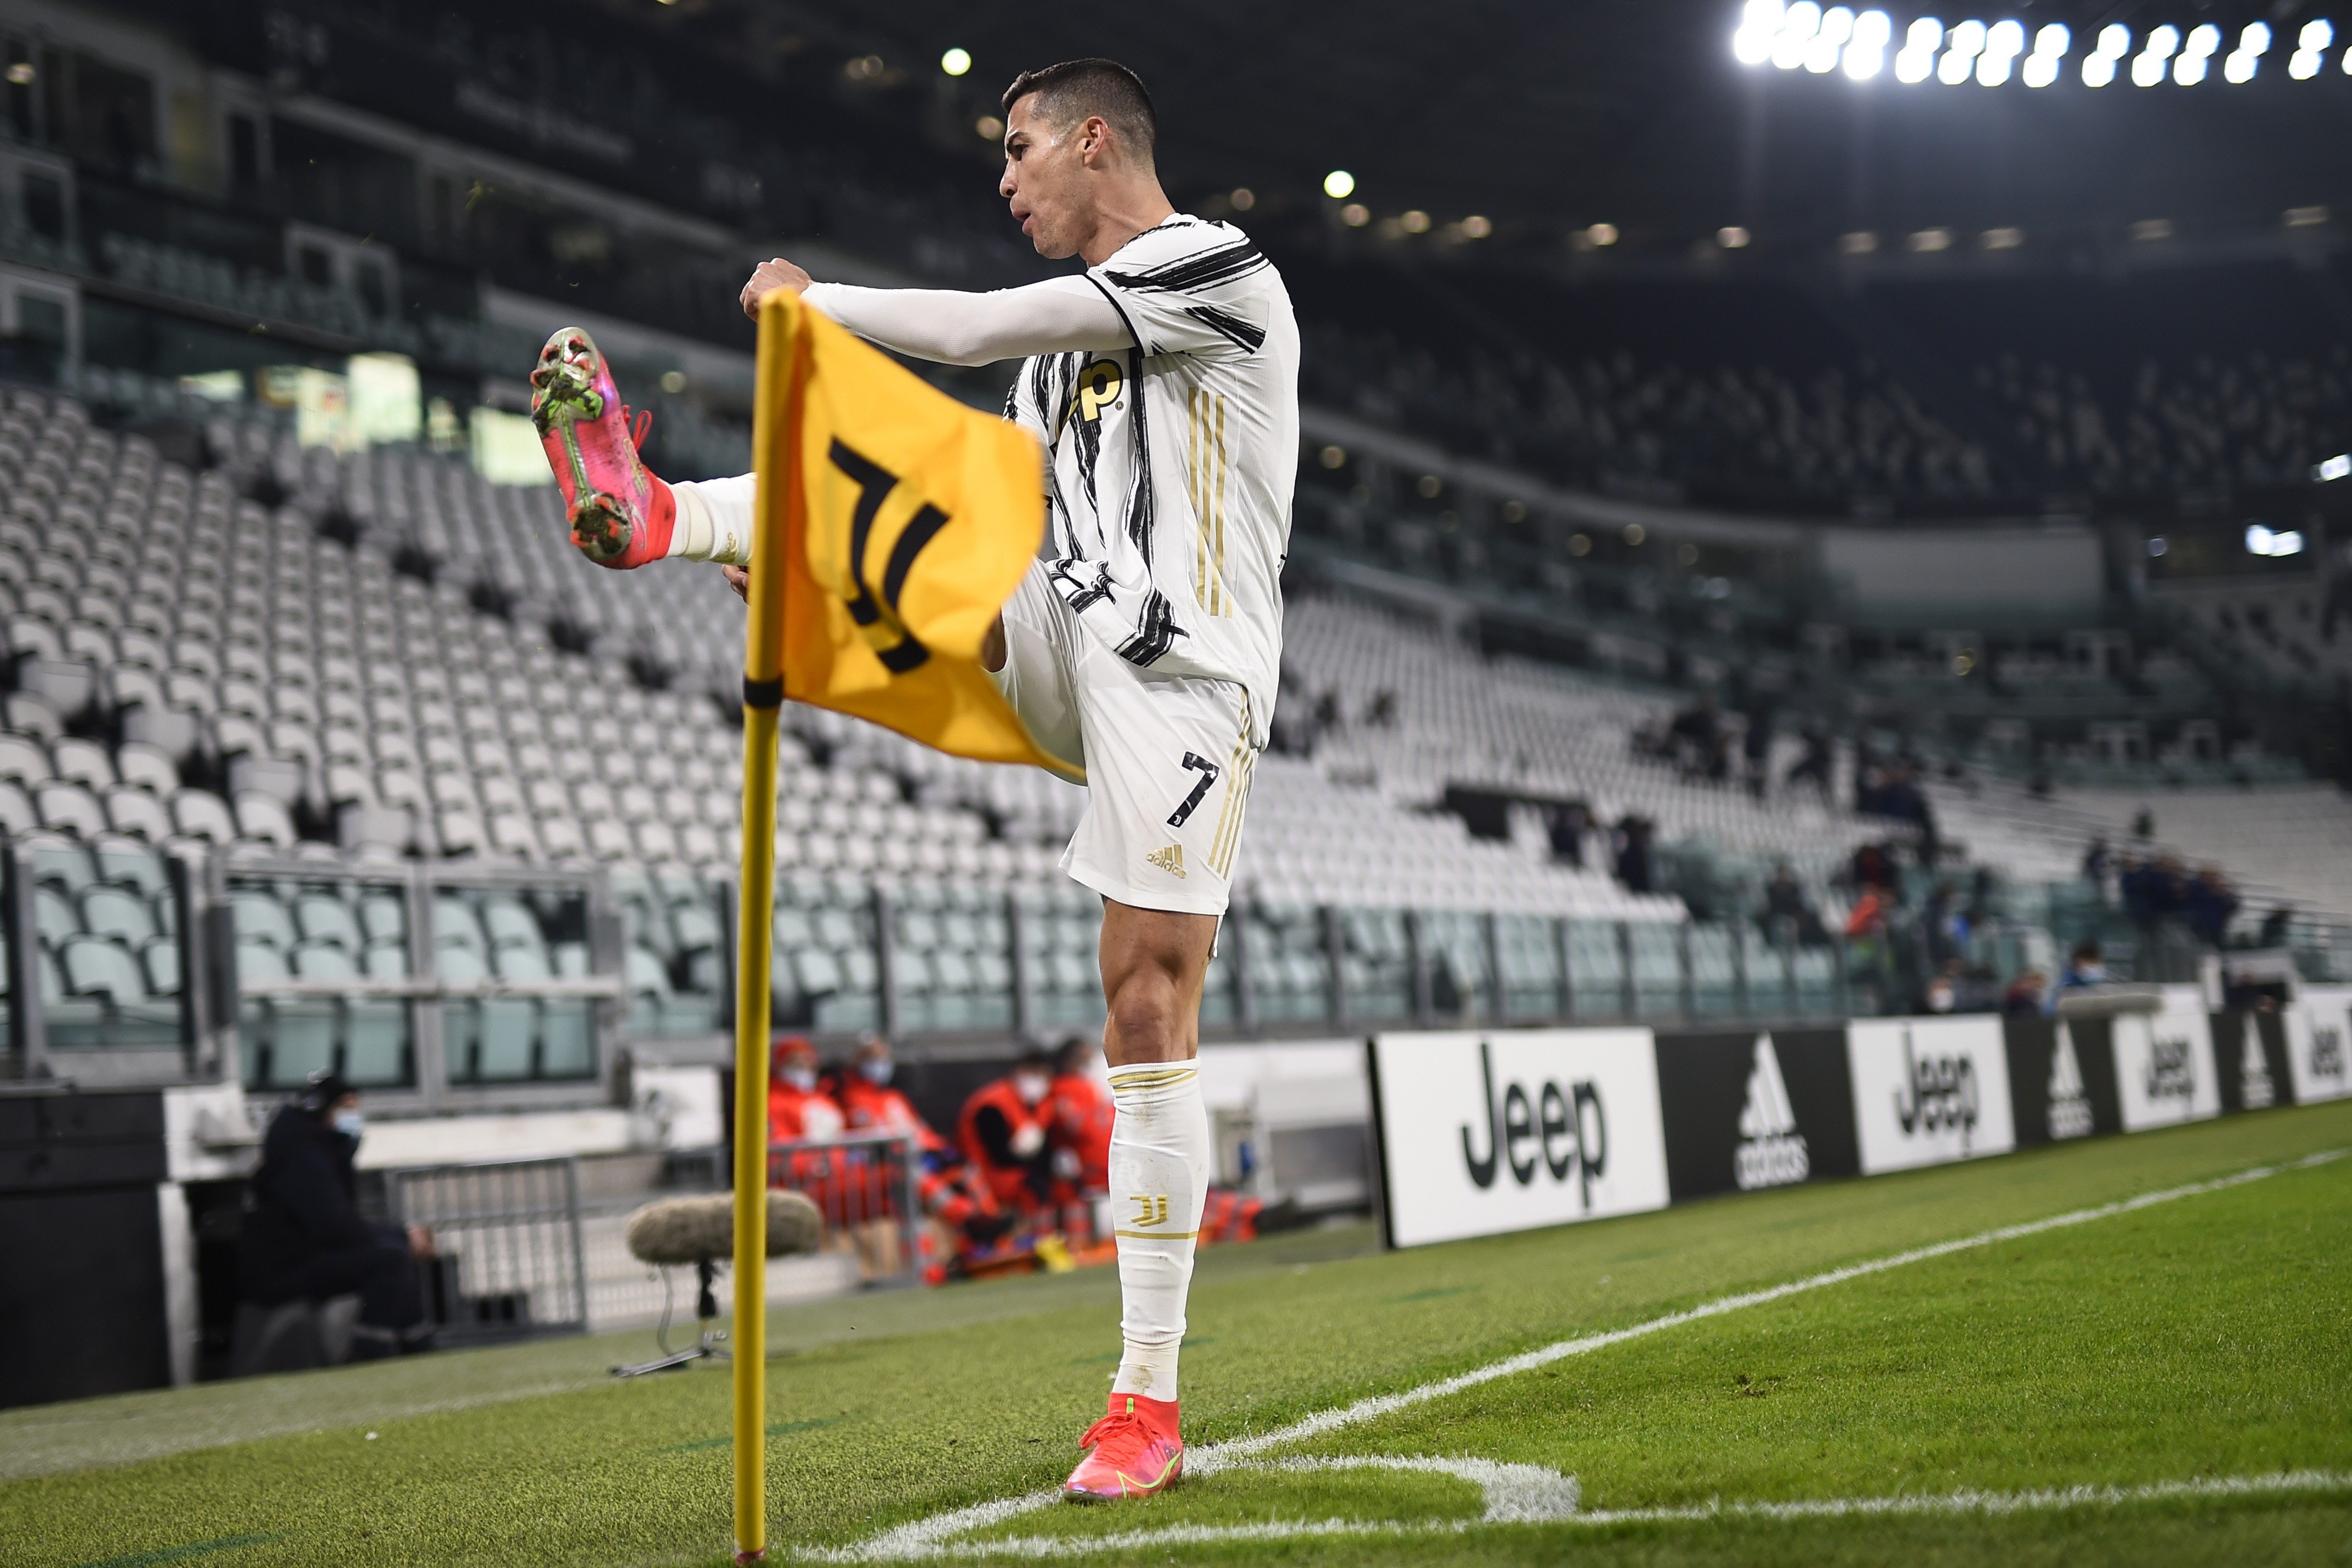 Nuova bufera su Ronaldo, la reazione dei tifosi |  Sport e Vai